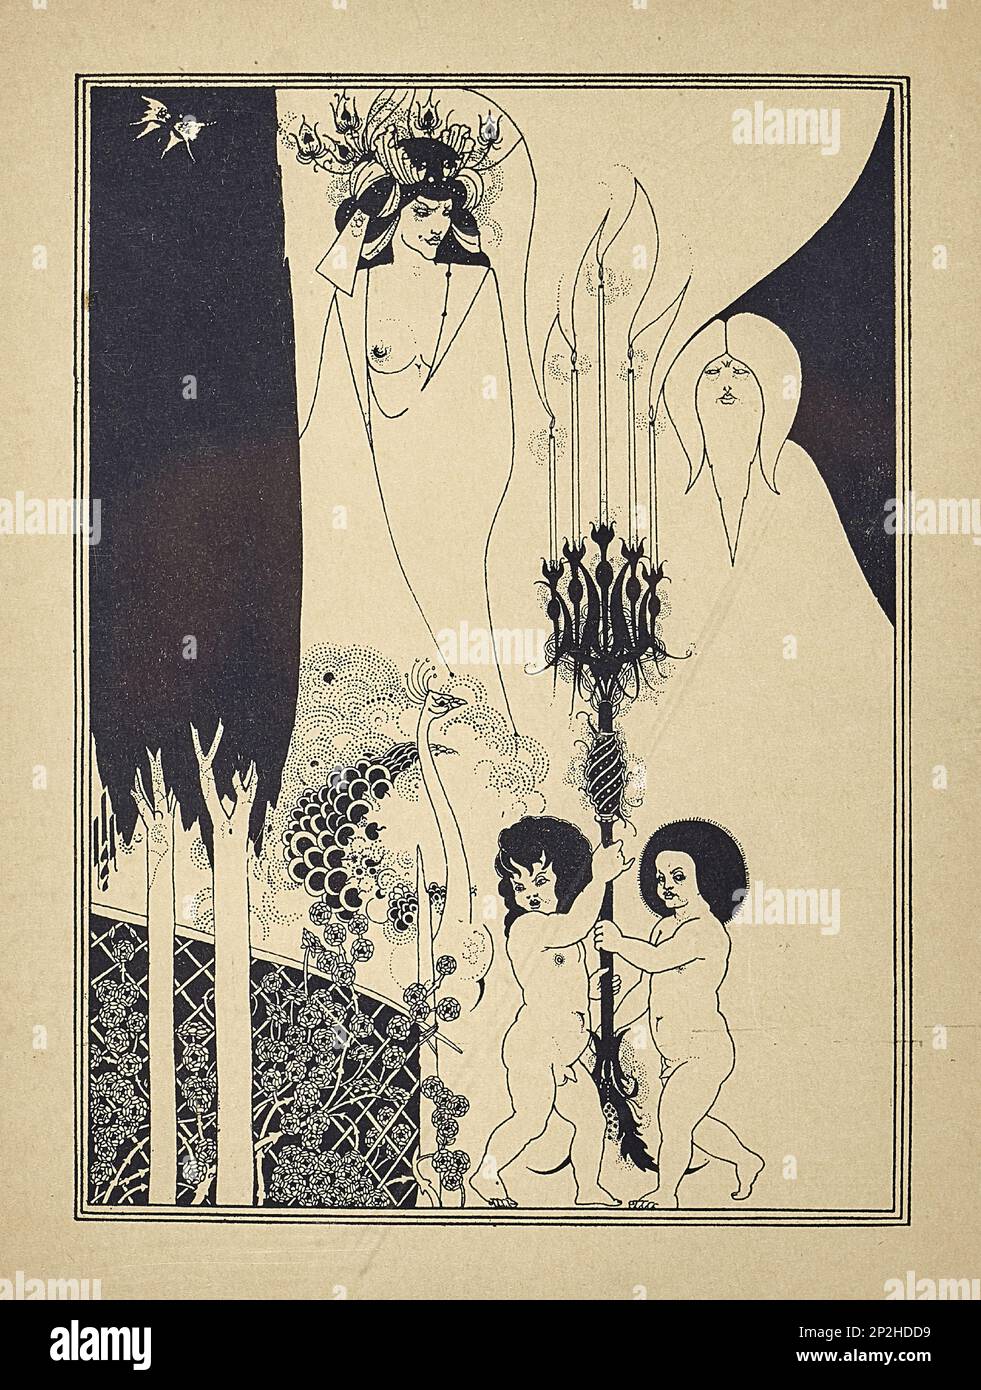 Illustrazione per Salome di Oscar Wilde, 1894. Collezione privata. Foto Stock